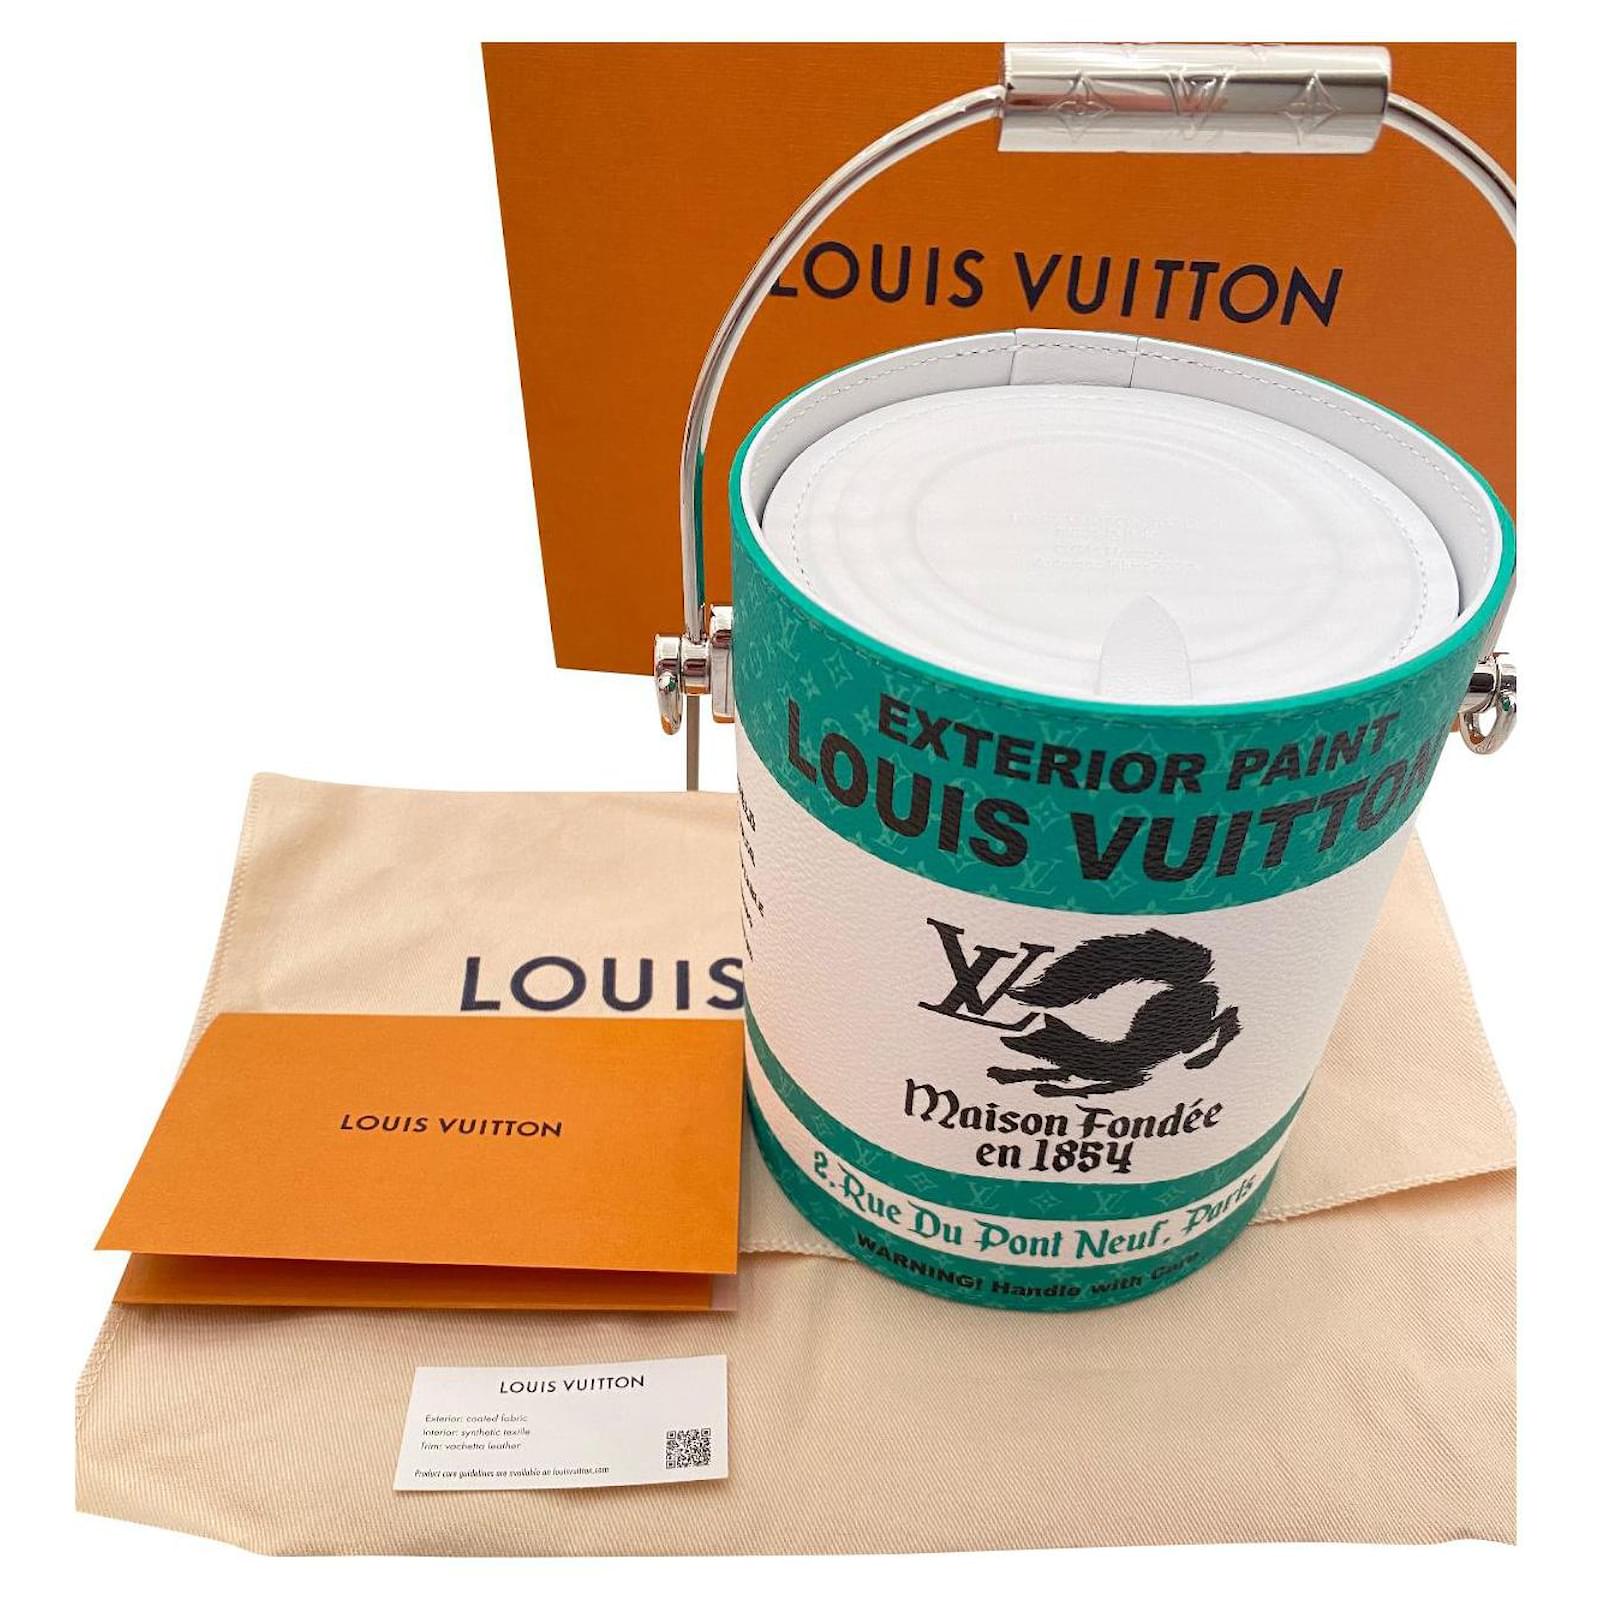 Peinture Louis Vuitton à acheter